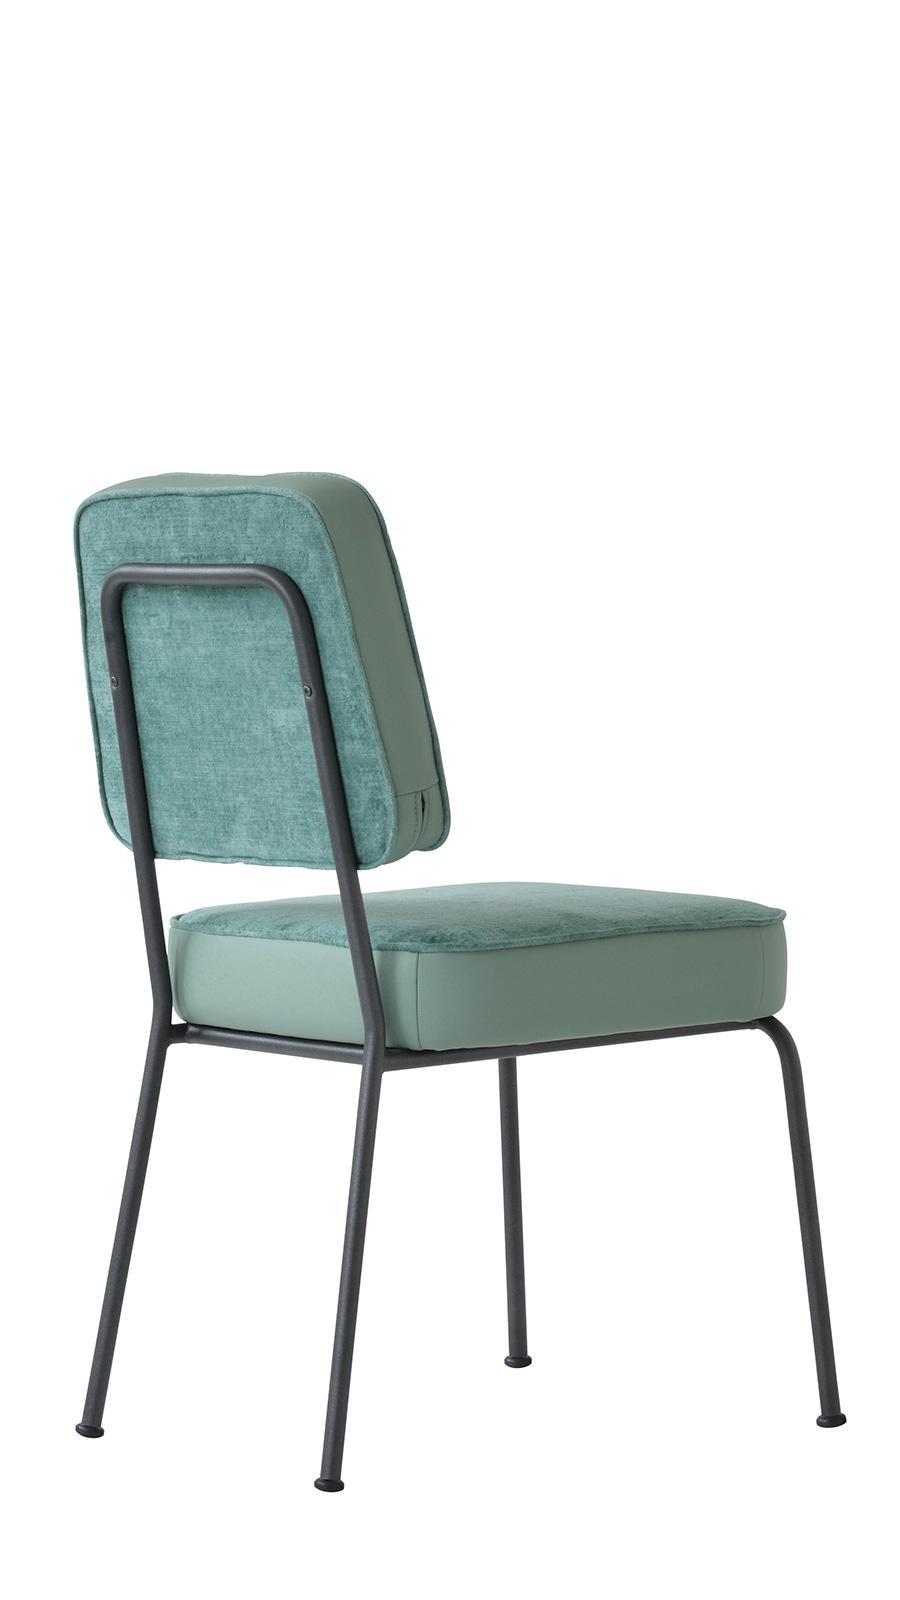 Structure métallique classique et vintage pour une chaise rembourrée de haute qualité. Revêtement en tissu téchnique dans de nombreuses couleurs.